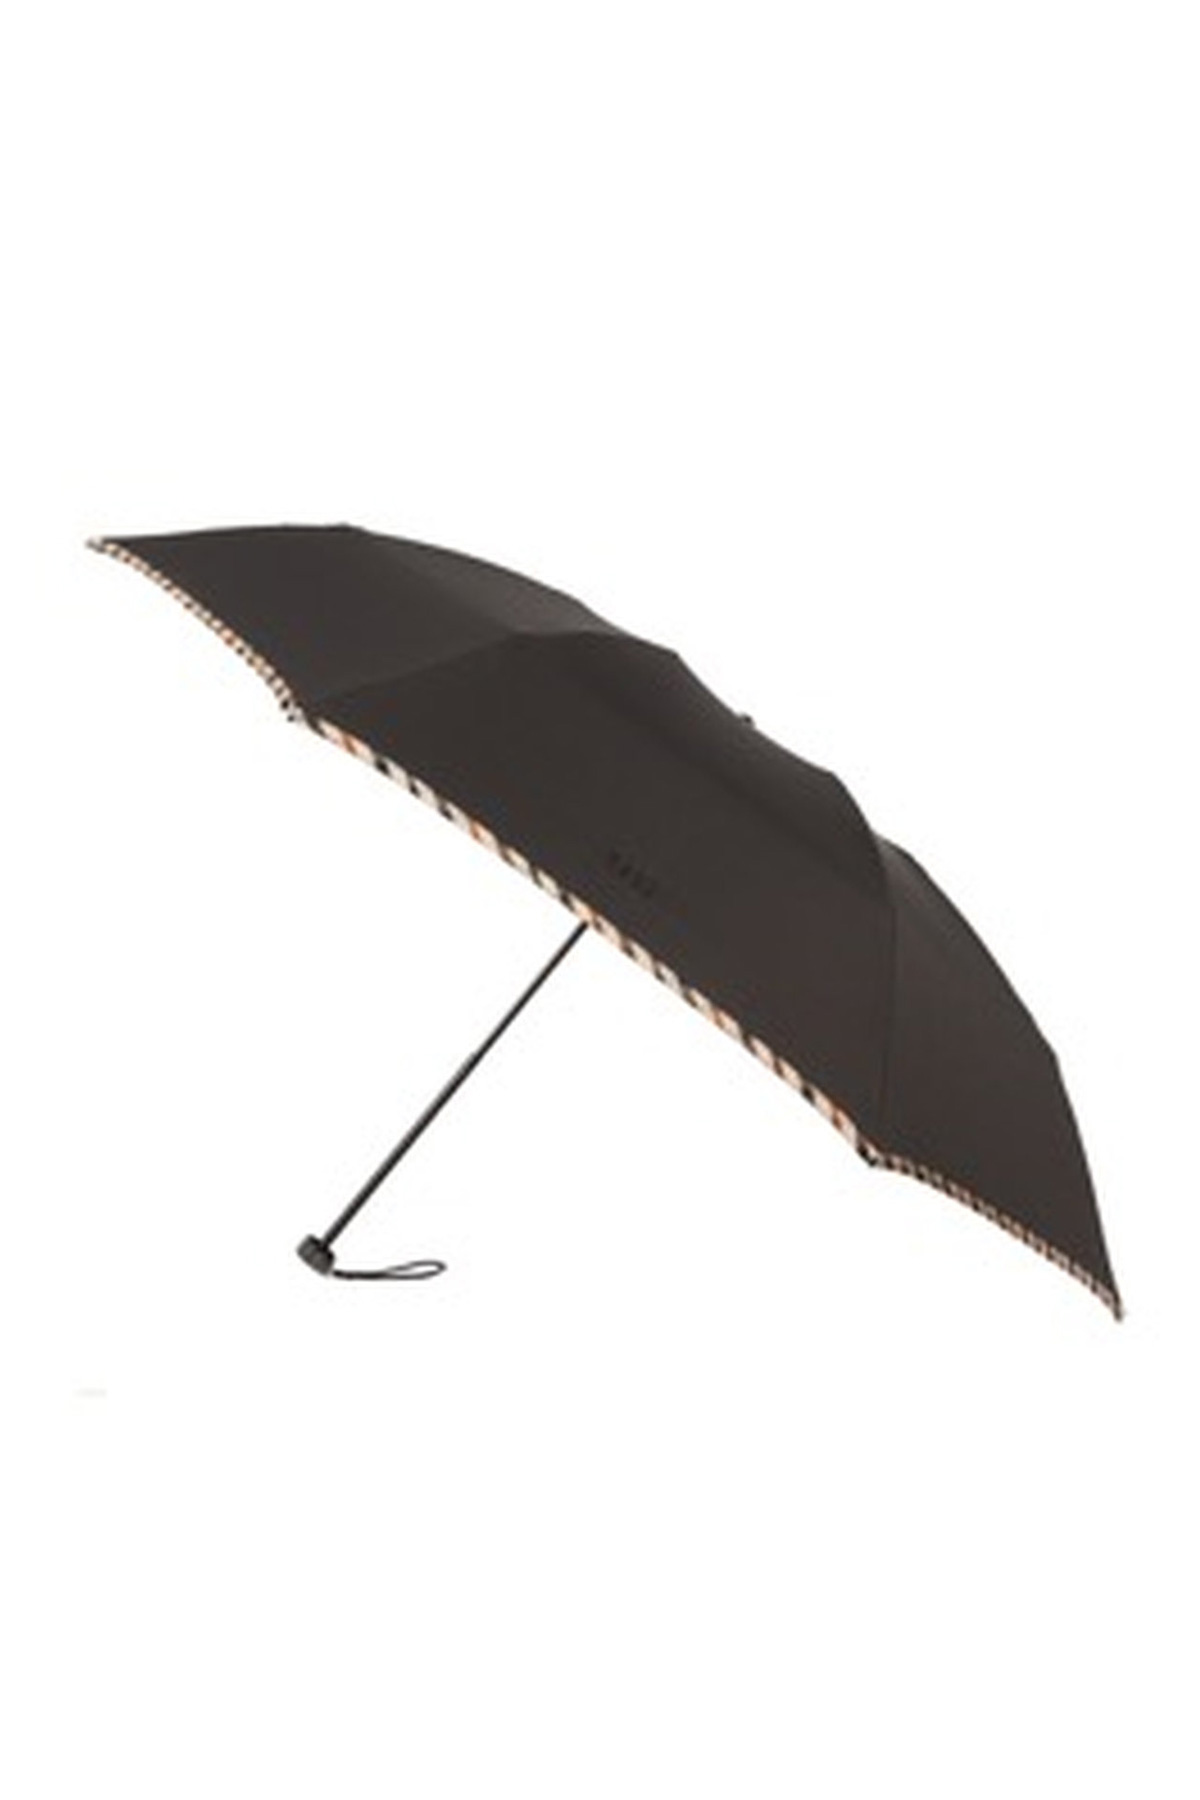 【紳士雨傘】折りたたみ傘無地パイピング 詳細画像 4